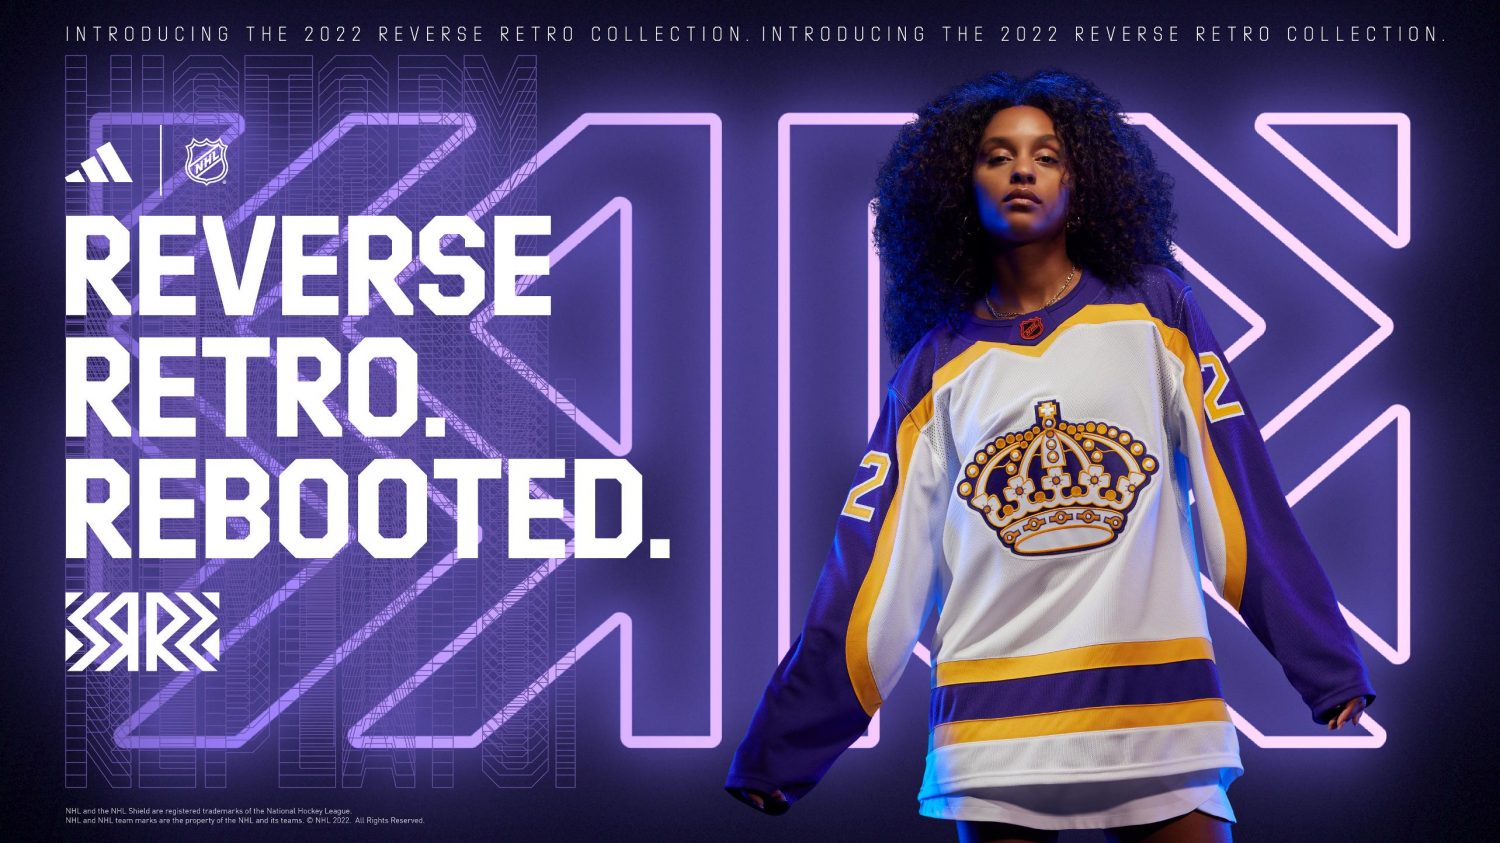 NHL officially announces Reverse Retro 2.0 line